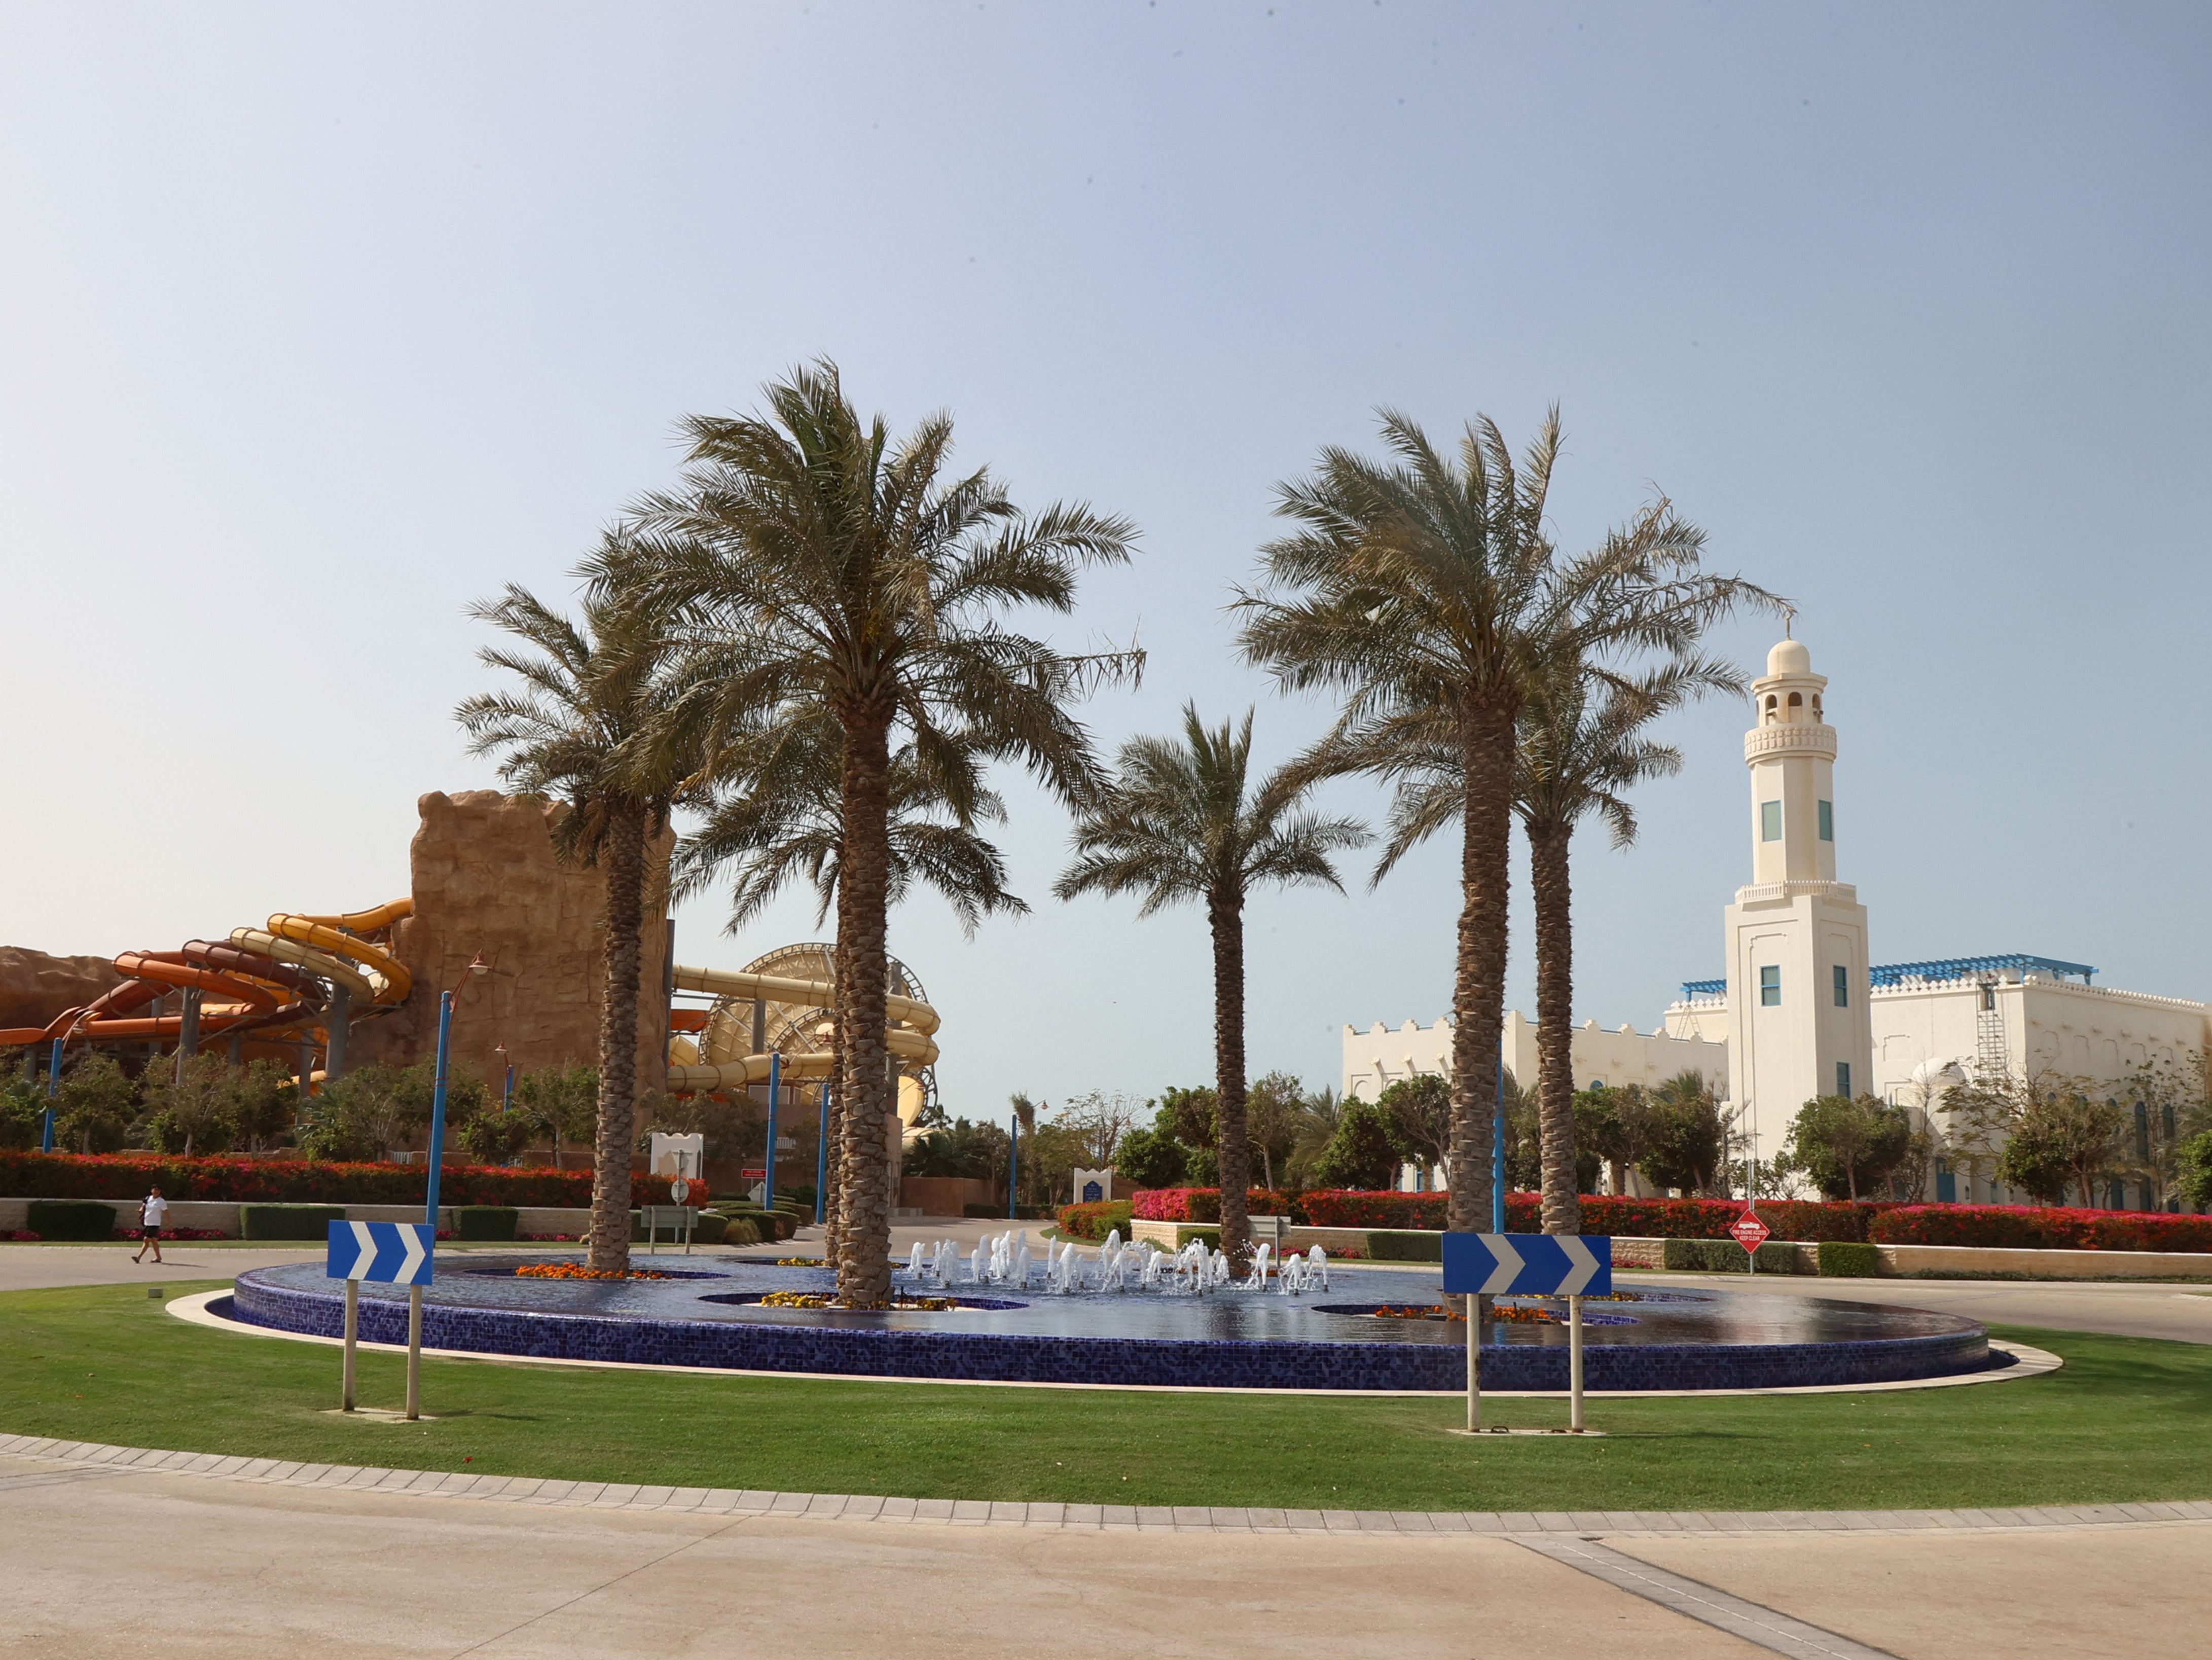 Hilton Salwa Beach Resort and Villa at Abu Samrah in Qatar